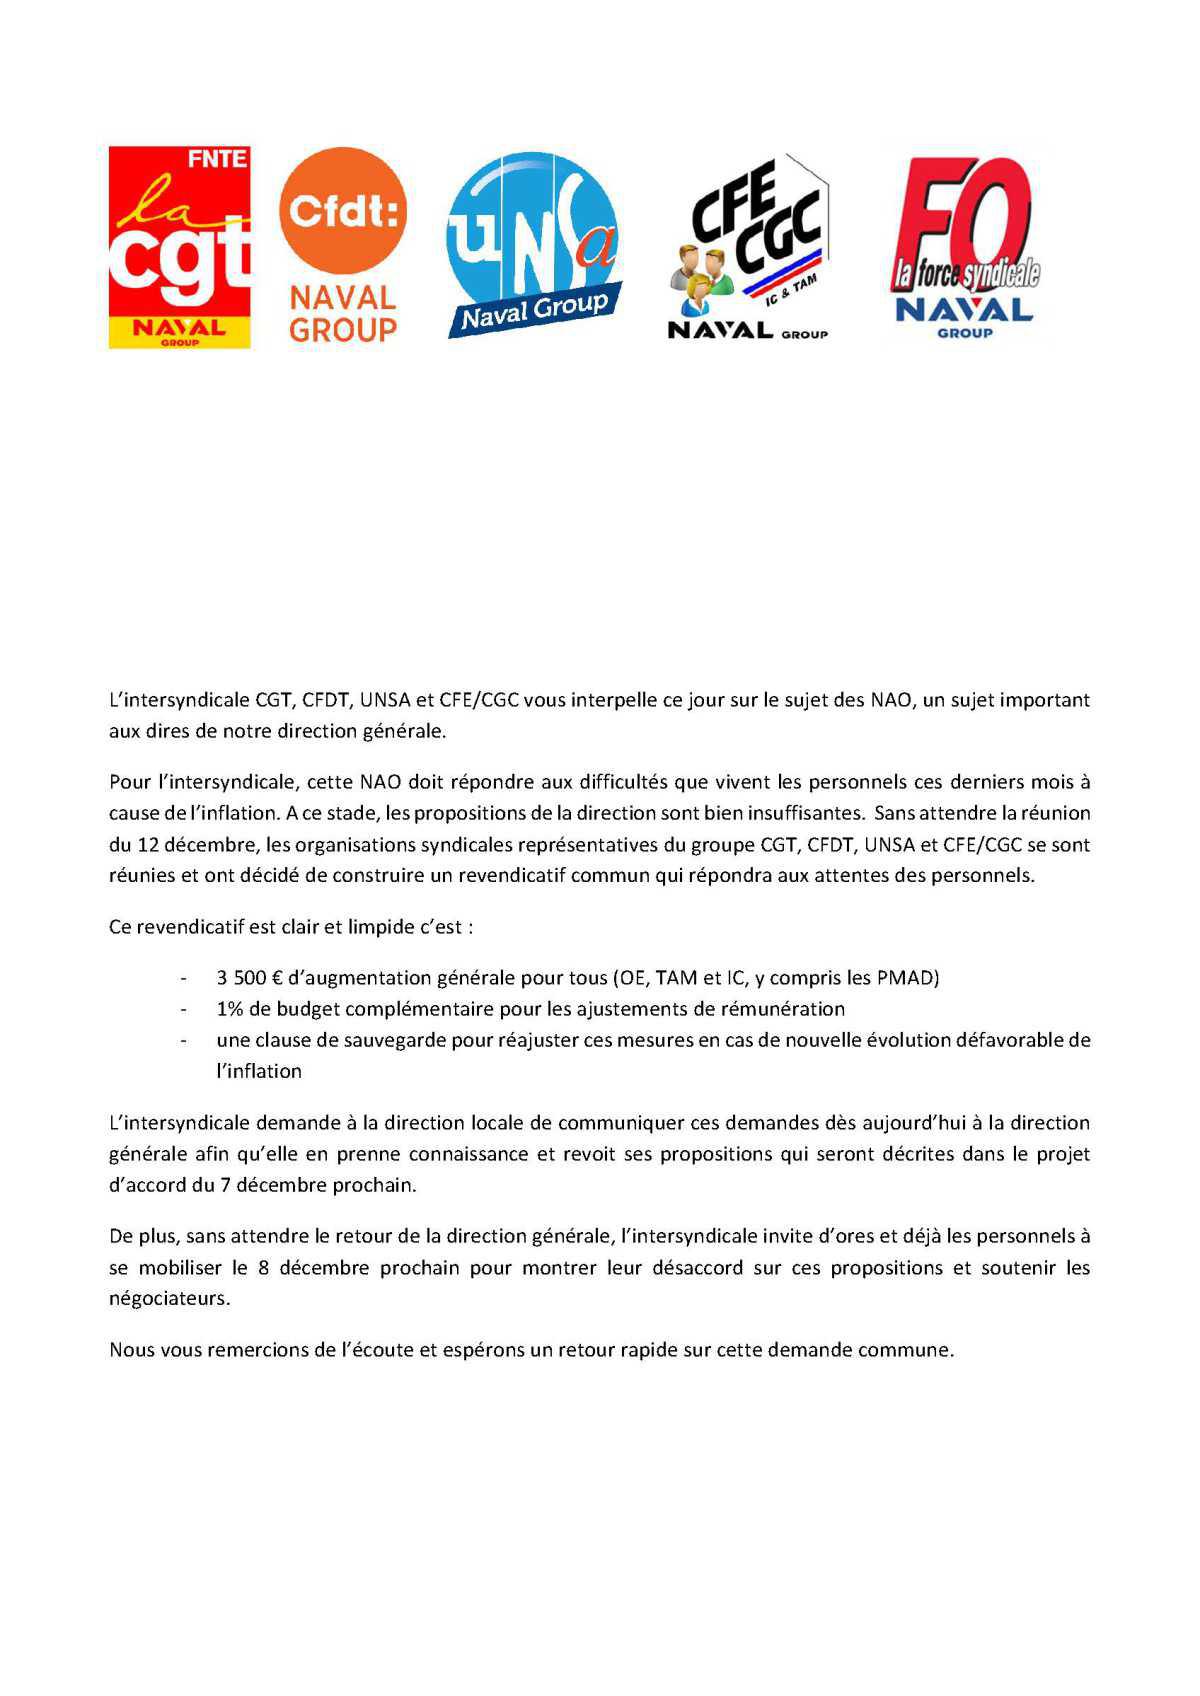 Déclaration liminaire intersyndicale CGT - CFDT - UNSA - CFE/CGC - FO au CSE du 6 décembre